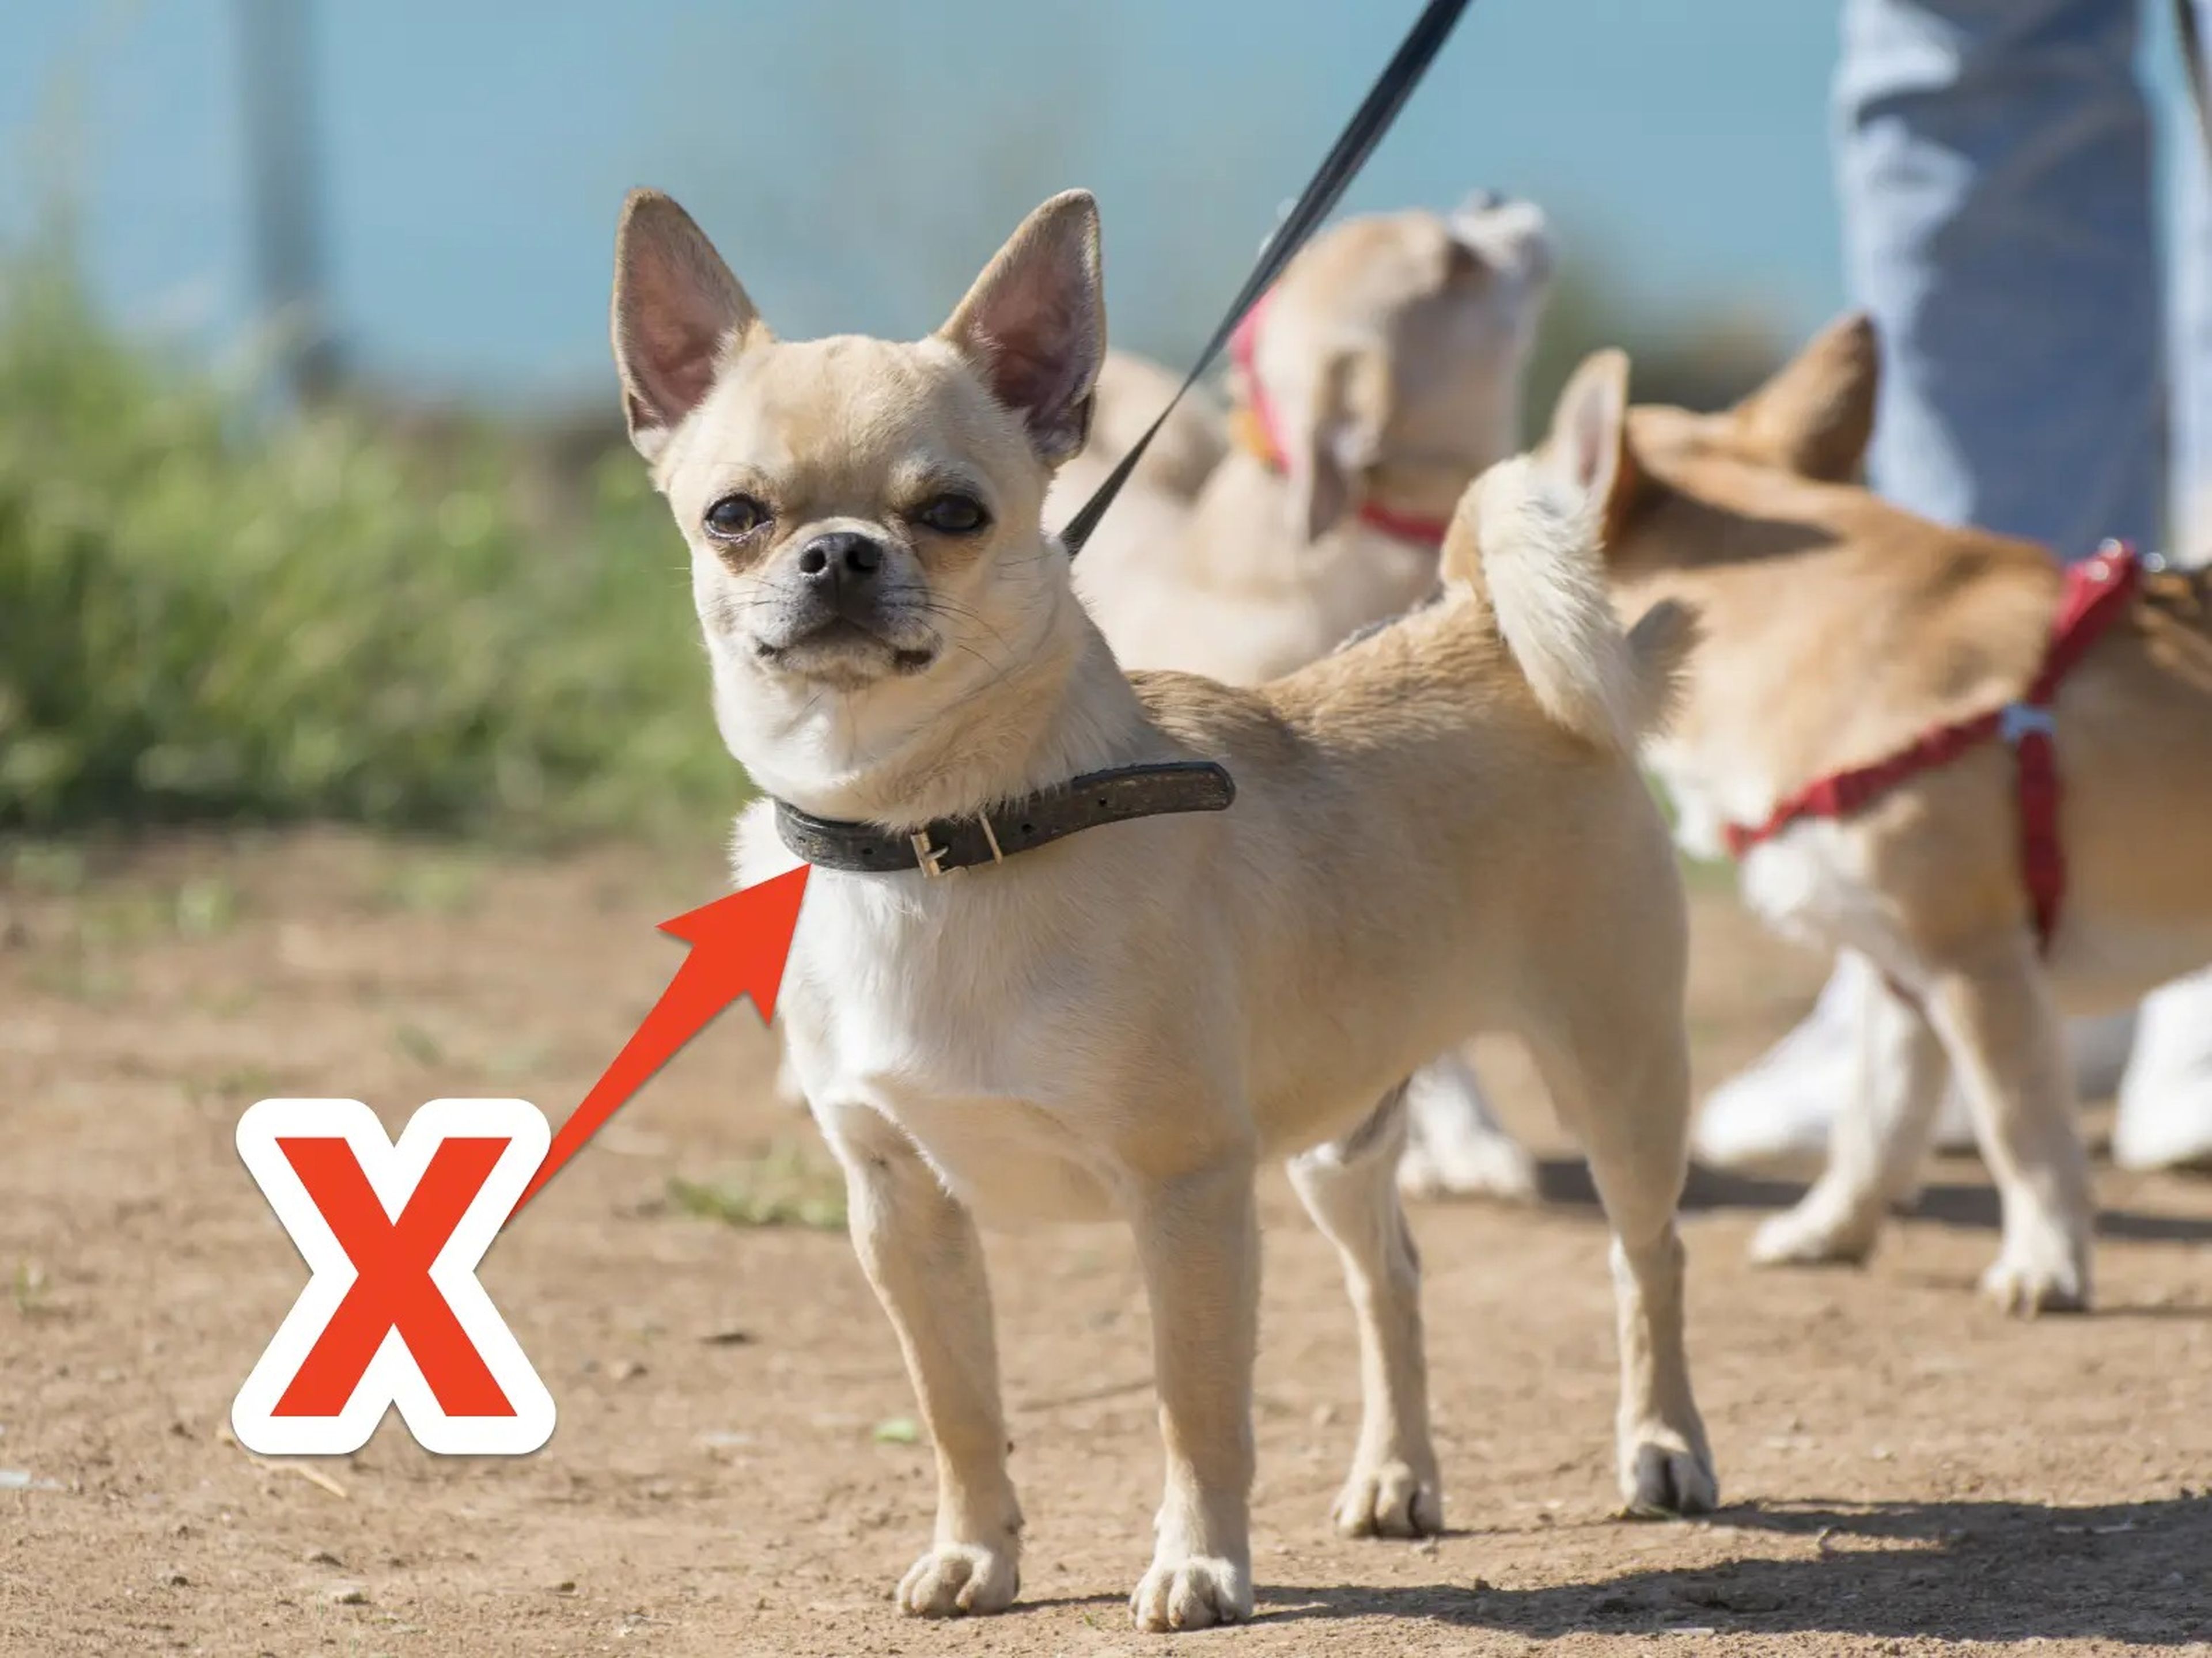 Business Insider habla con veterinarios sobre los errores más comunes que cometen los dueños de perros cuando sacan a pasear a sus mascotas.